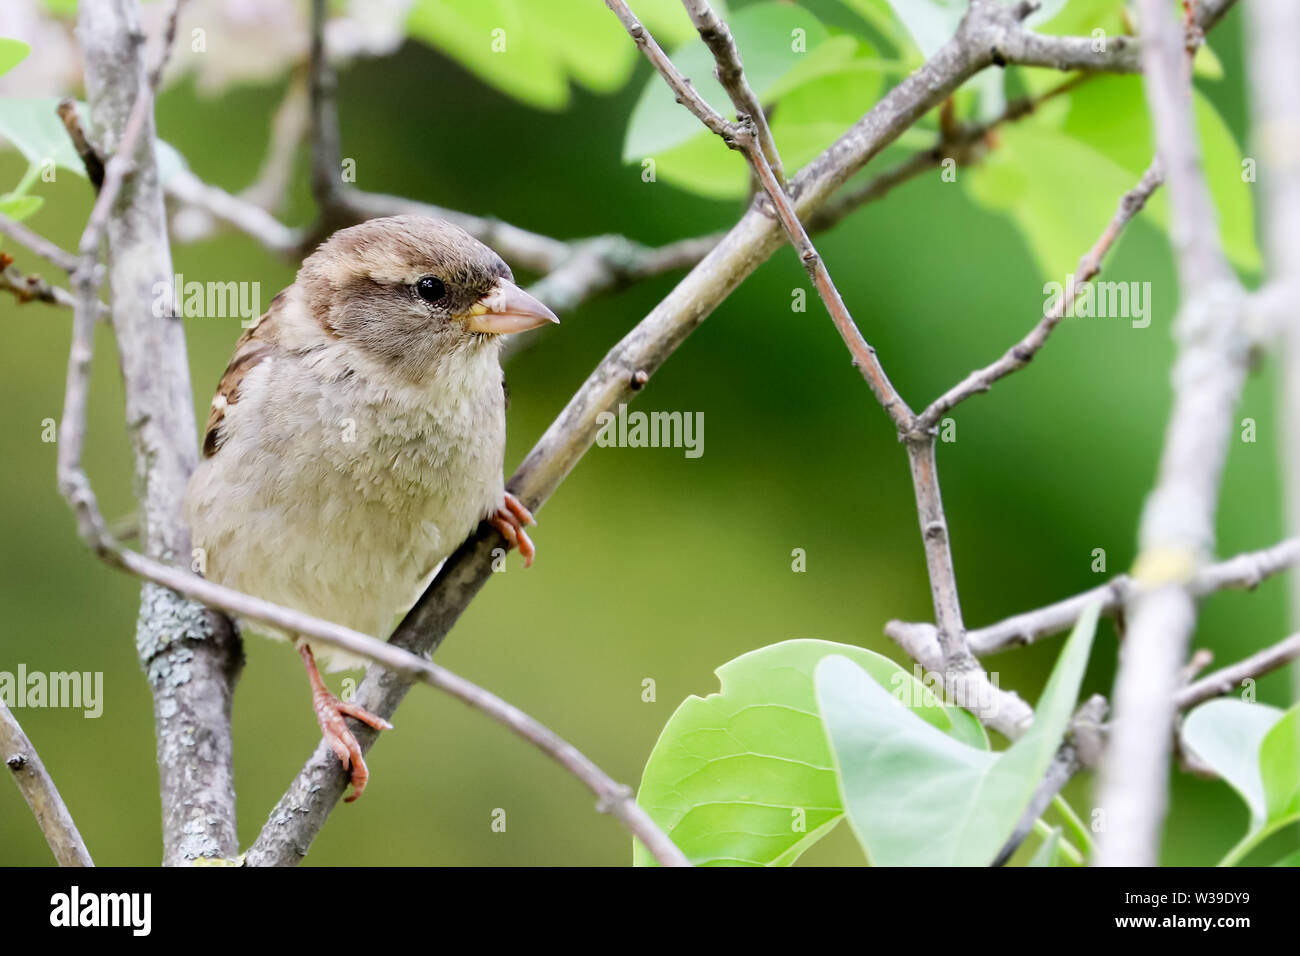 Spatz Vogel auf Ast. Sparrow songbird (Familie Gelbhalsmaus (Apodemus) sitzen und singen auf Ast inmitten grüner Blätter in der Nähe von bis Foto. Vogel Stockfoto